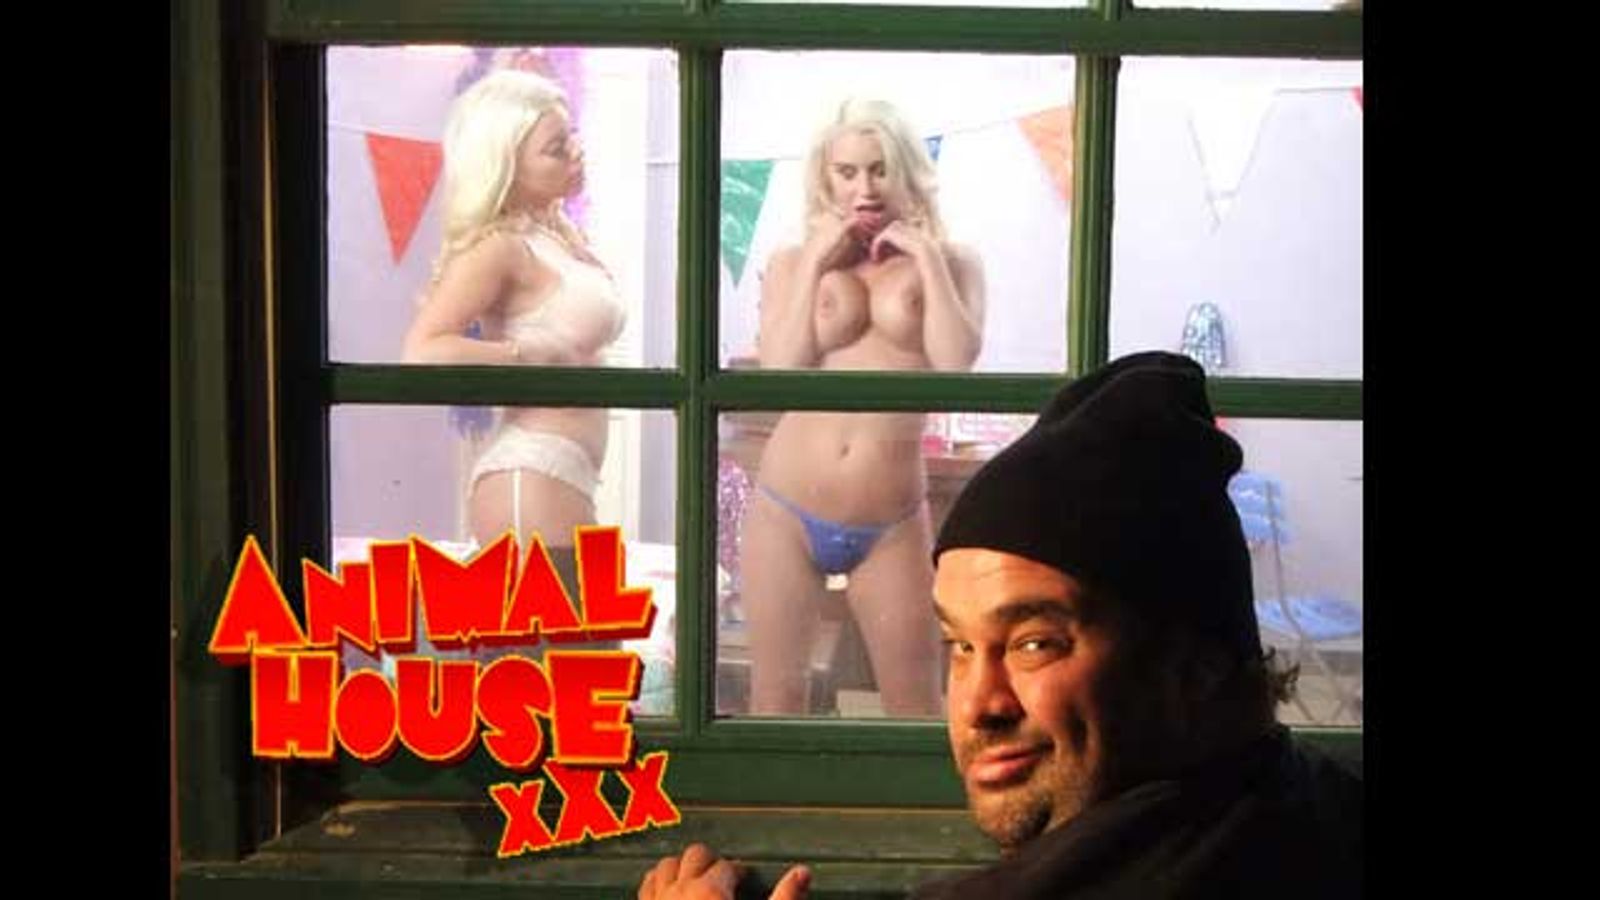 'Animal House XXX' Invokes Naked Spirit of John Belushi